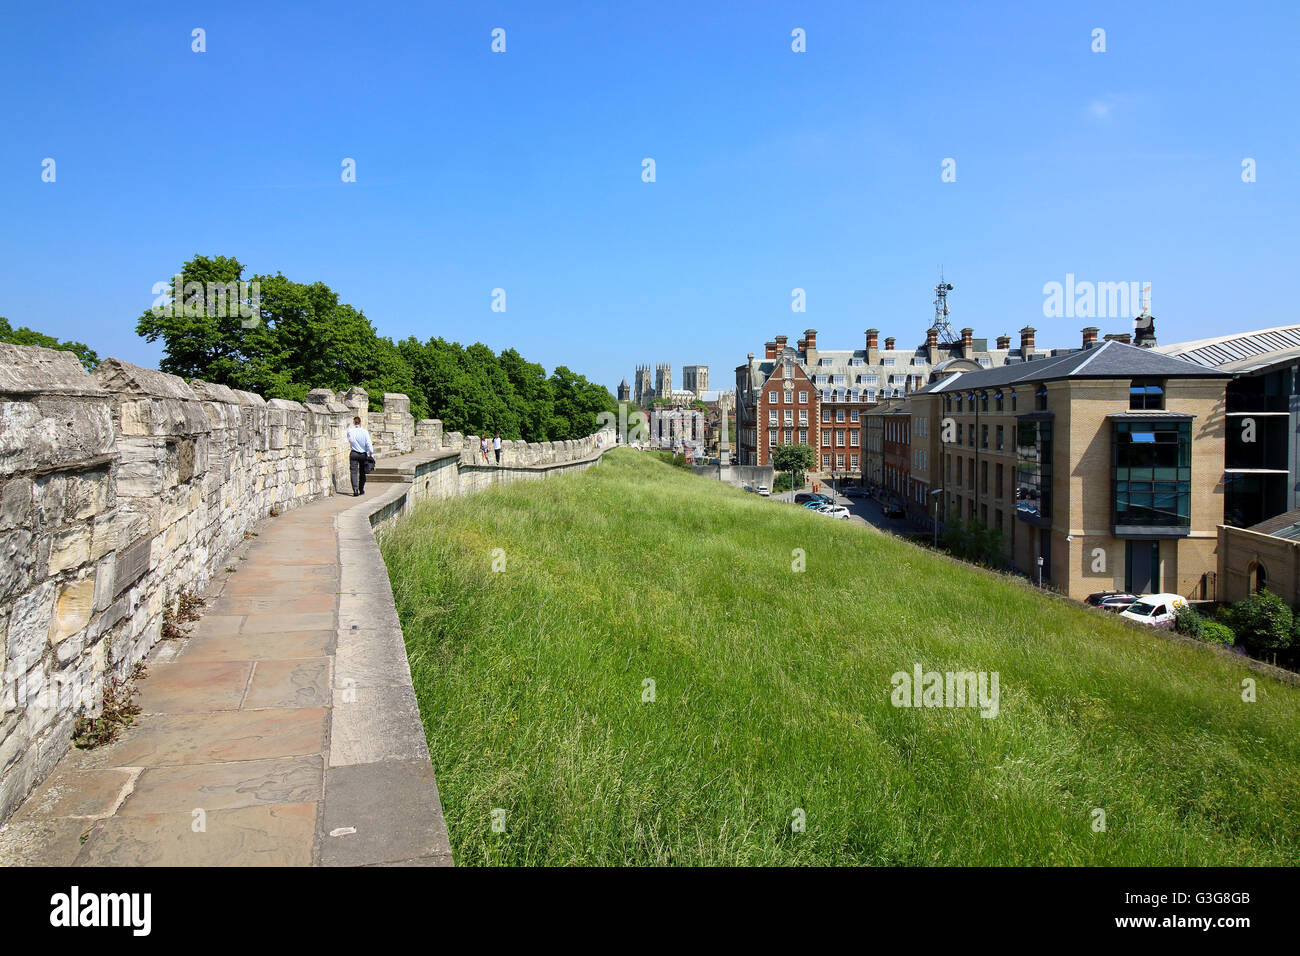 Prati fioriti sulle piste sotto le famose mura medievali del centro storico della città di York su una bella giornata d'estate. Foto Stock